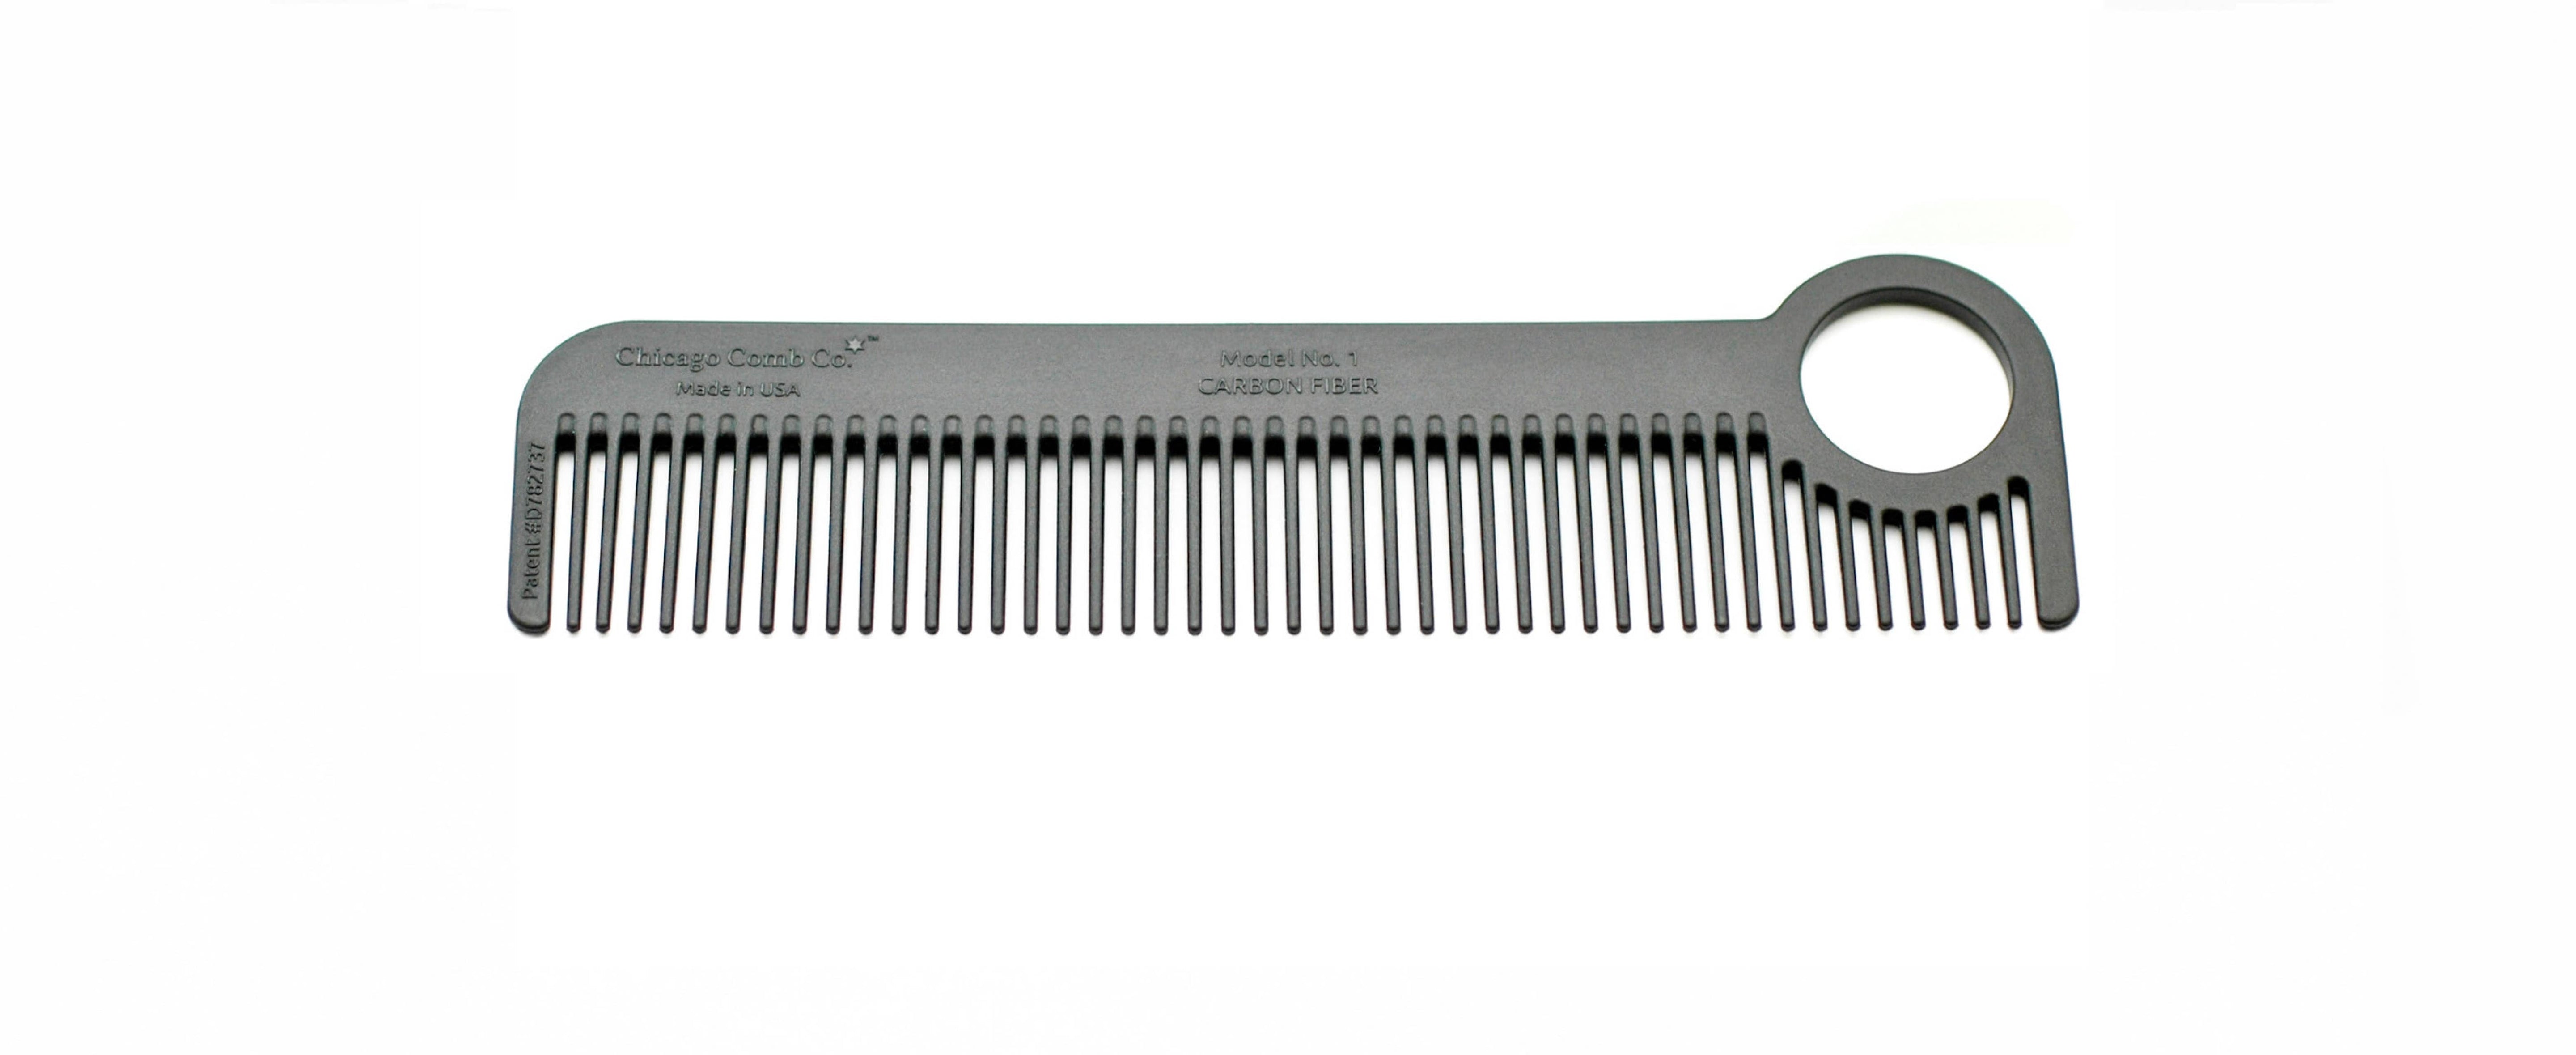 Chicago Comb Co. - Model No 1 Carbon Fiber Comb